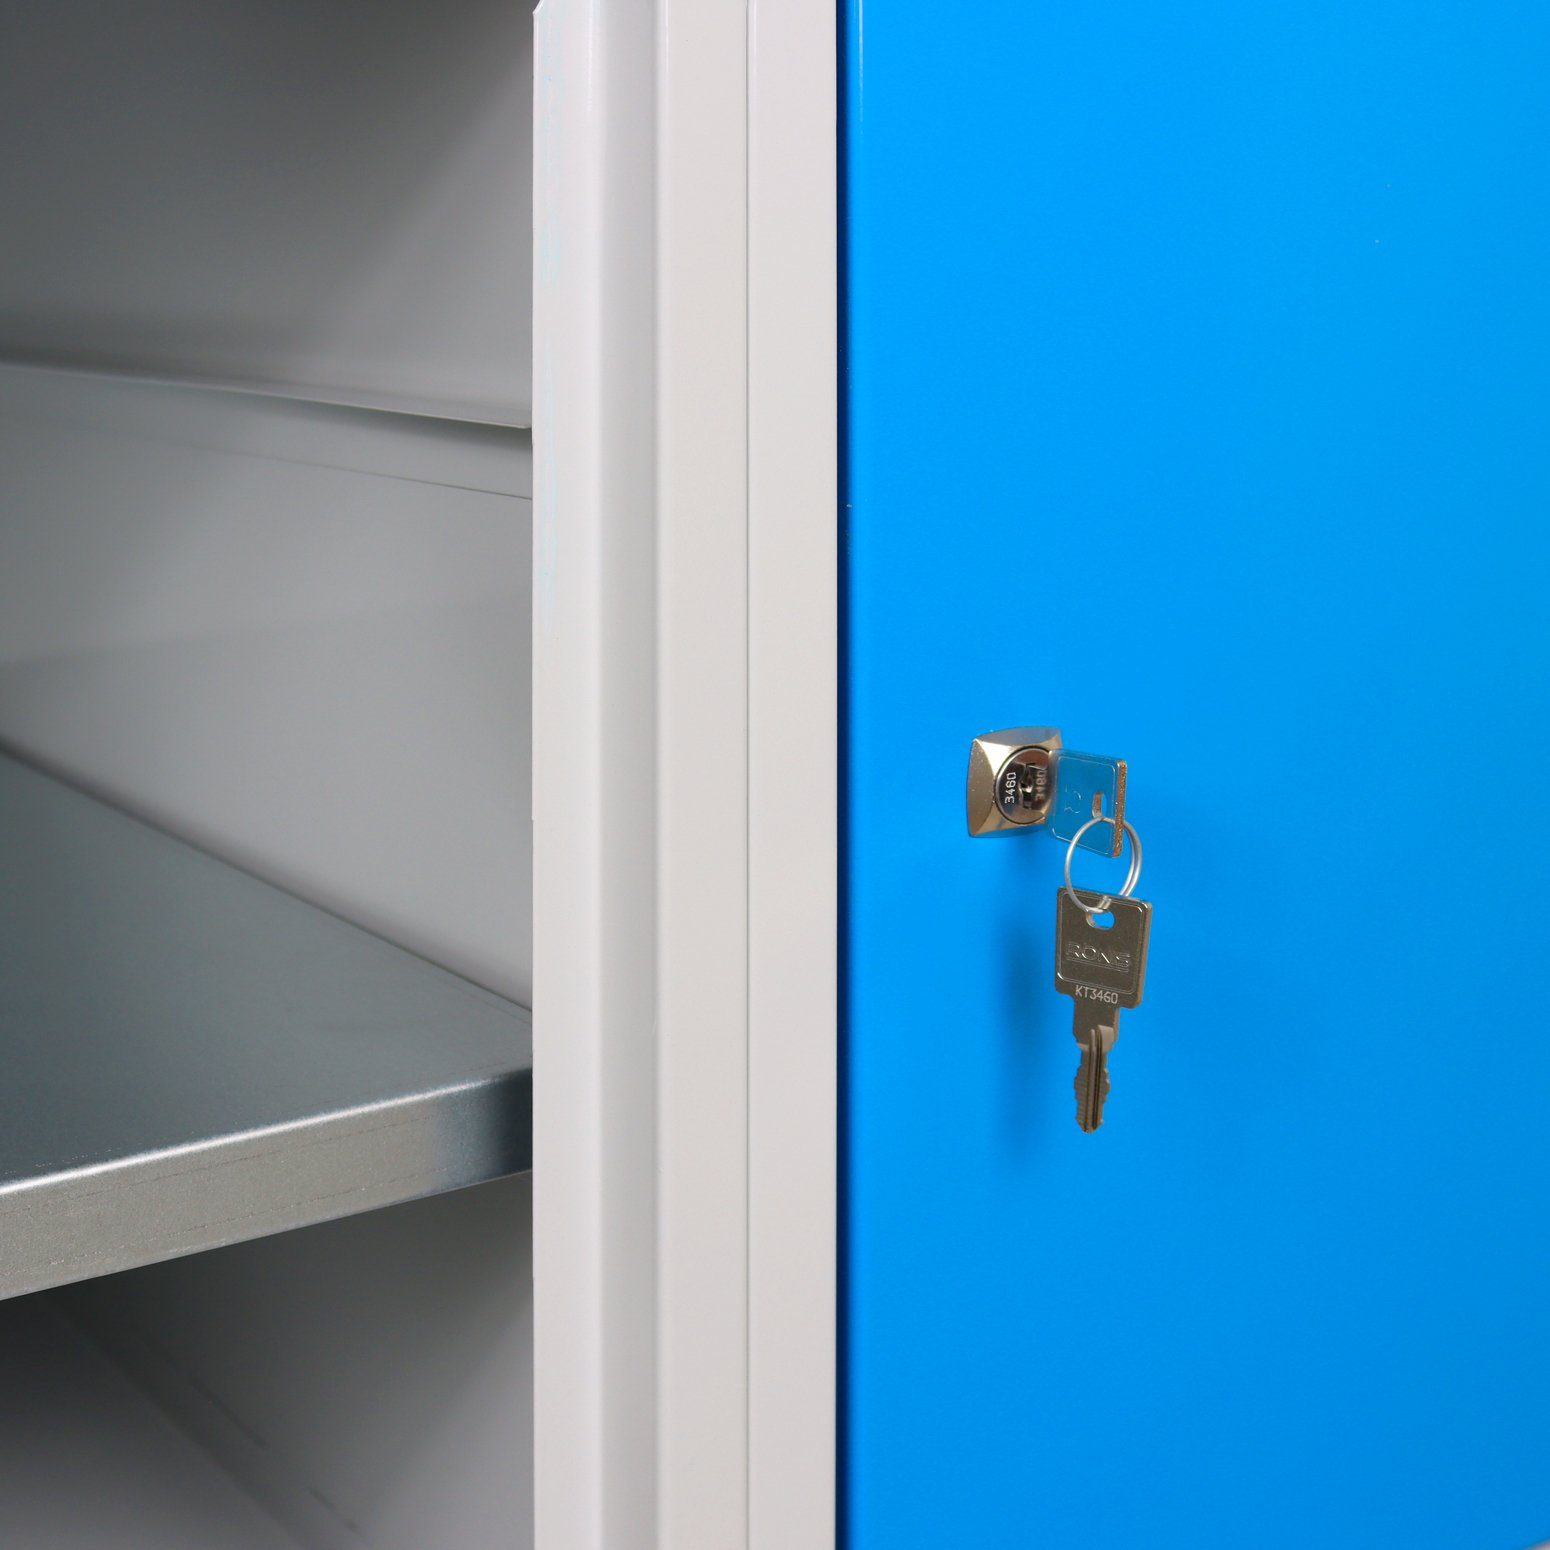 Regalteil, PROREGAL® Werkbank mit Grau/Blau Tür + + Rhino Lichtblau Ablagefläche 1 Werkbank